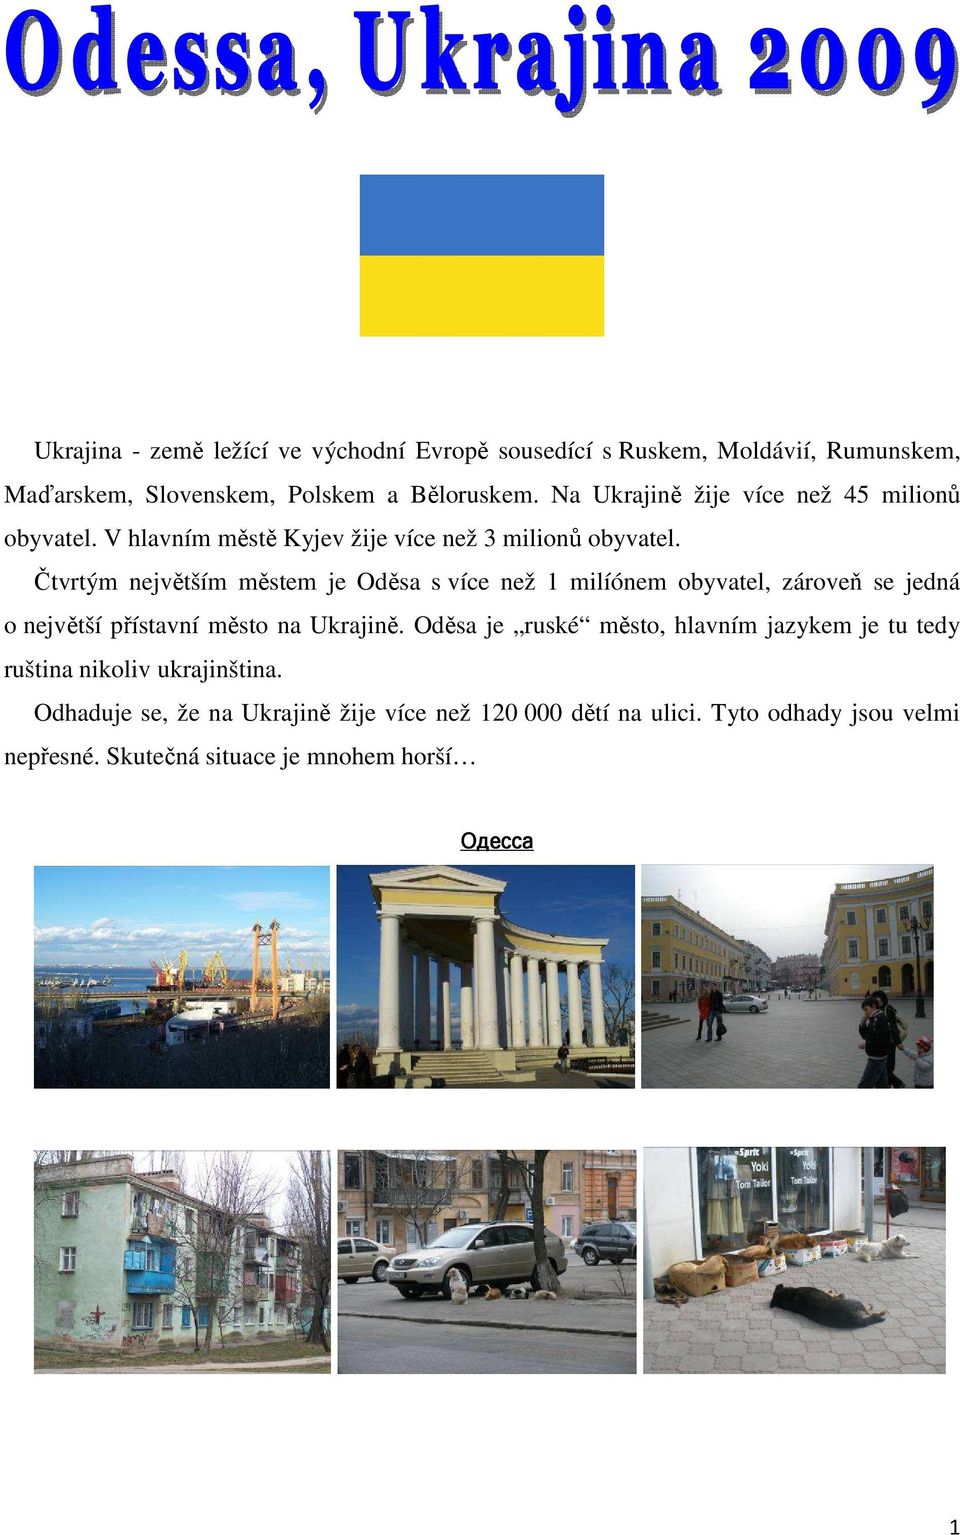 Čtvrtým největším městem je Oděsa s více než 1 milíónem obyvatel, zároveň se jedná o největší přístavní město na Ukrajině.